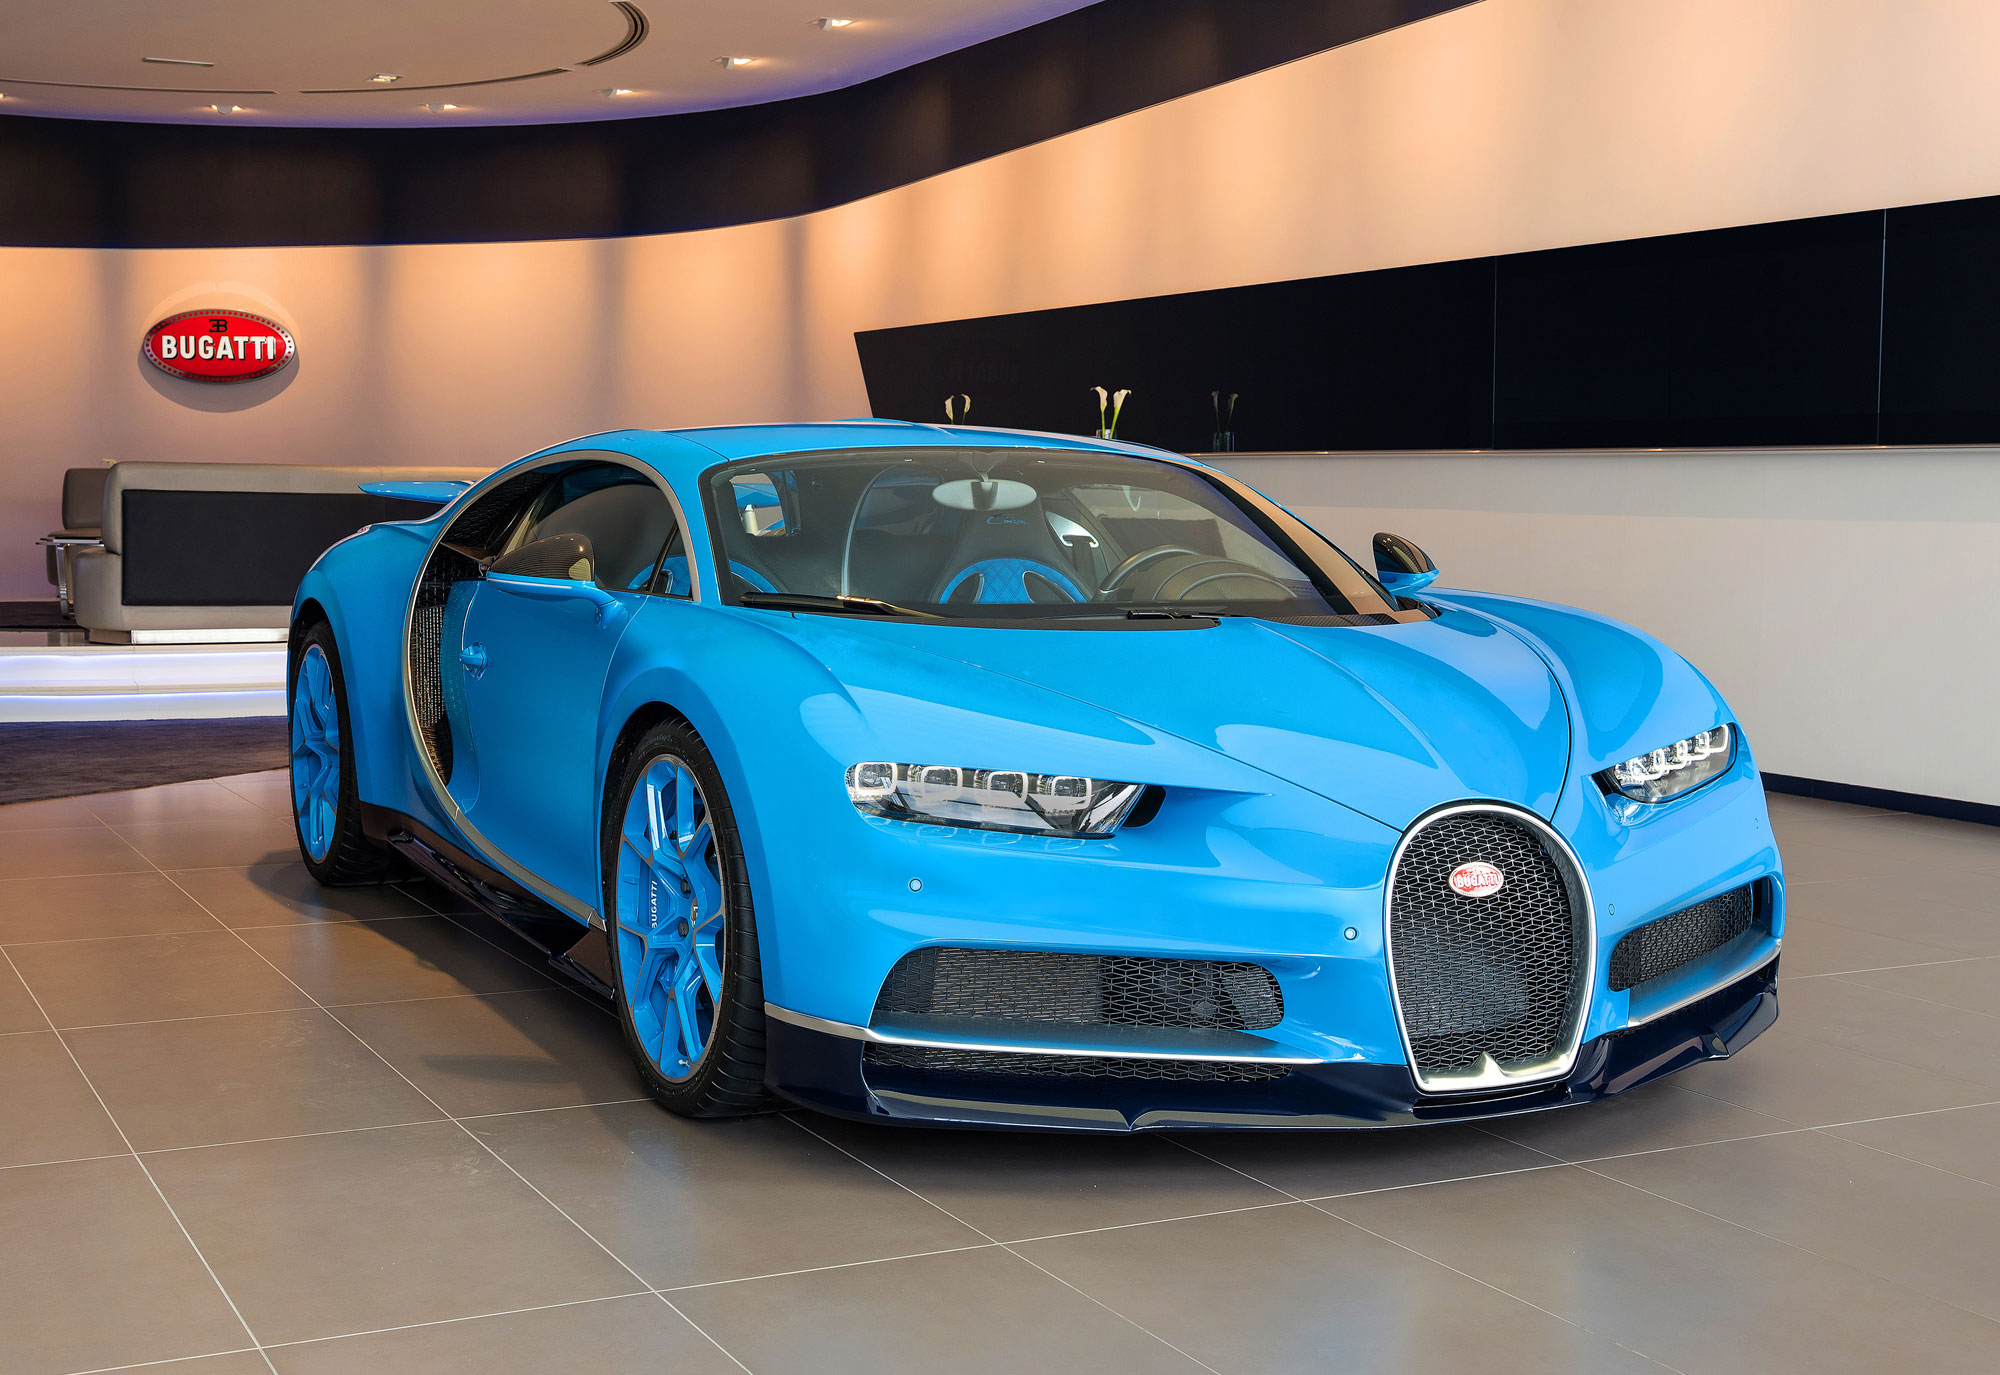 01_Showroom_Bugatti_UAE_Dubai.jpg